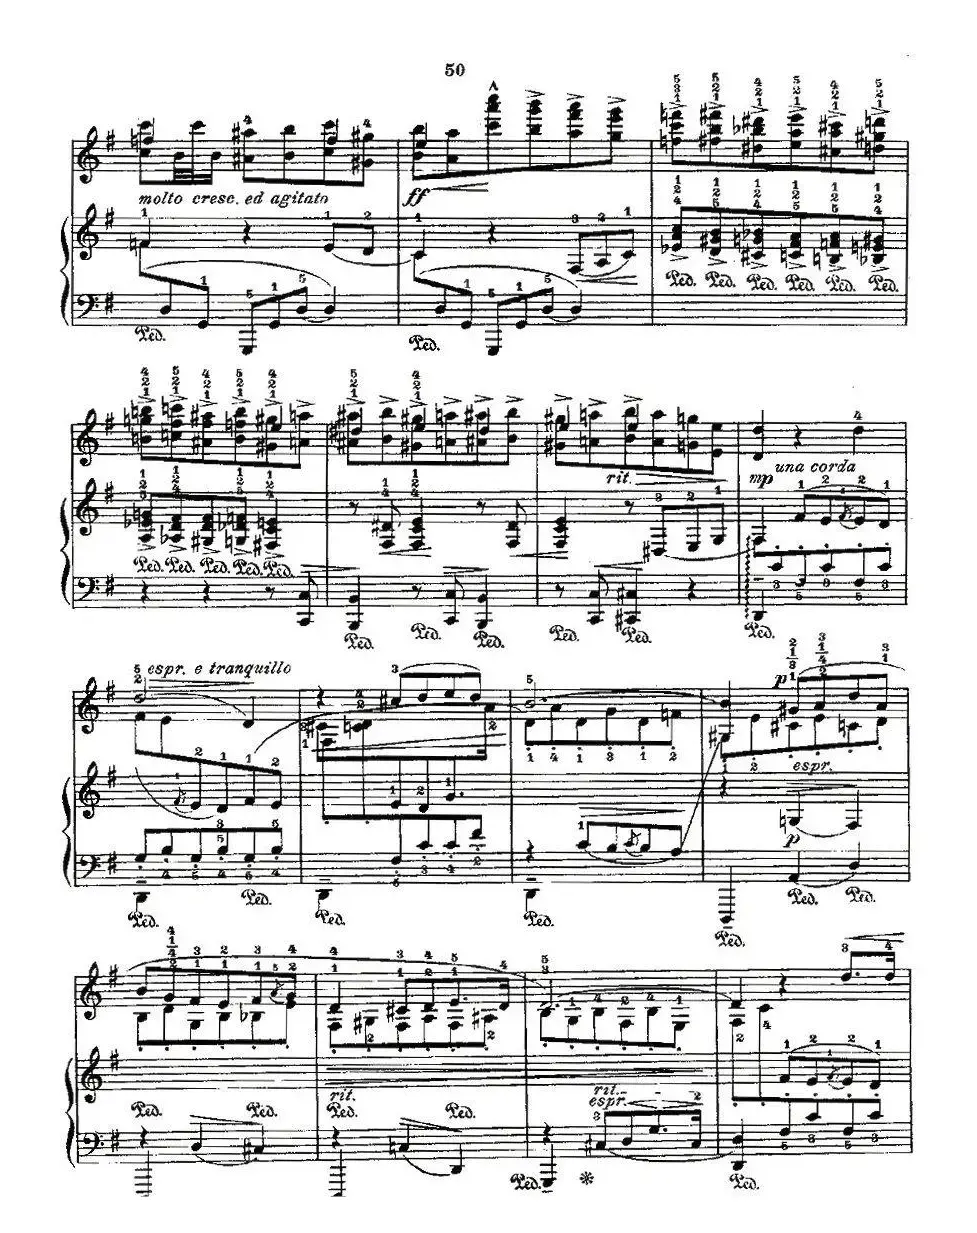 肖邦《练习曲》Fr.Chopin No 3